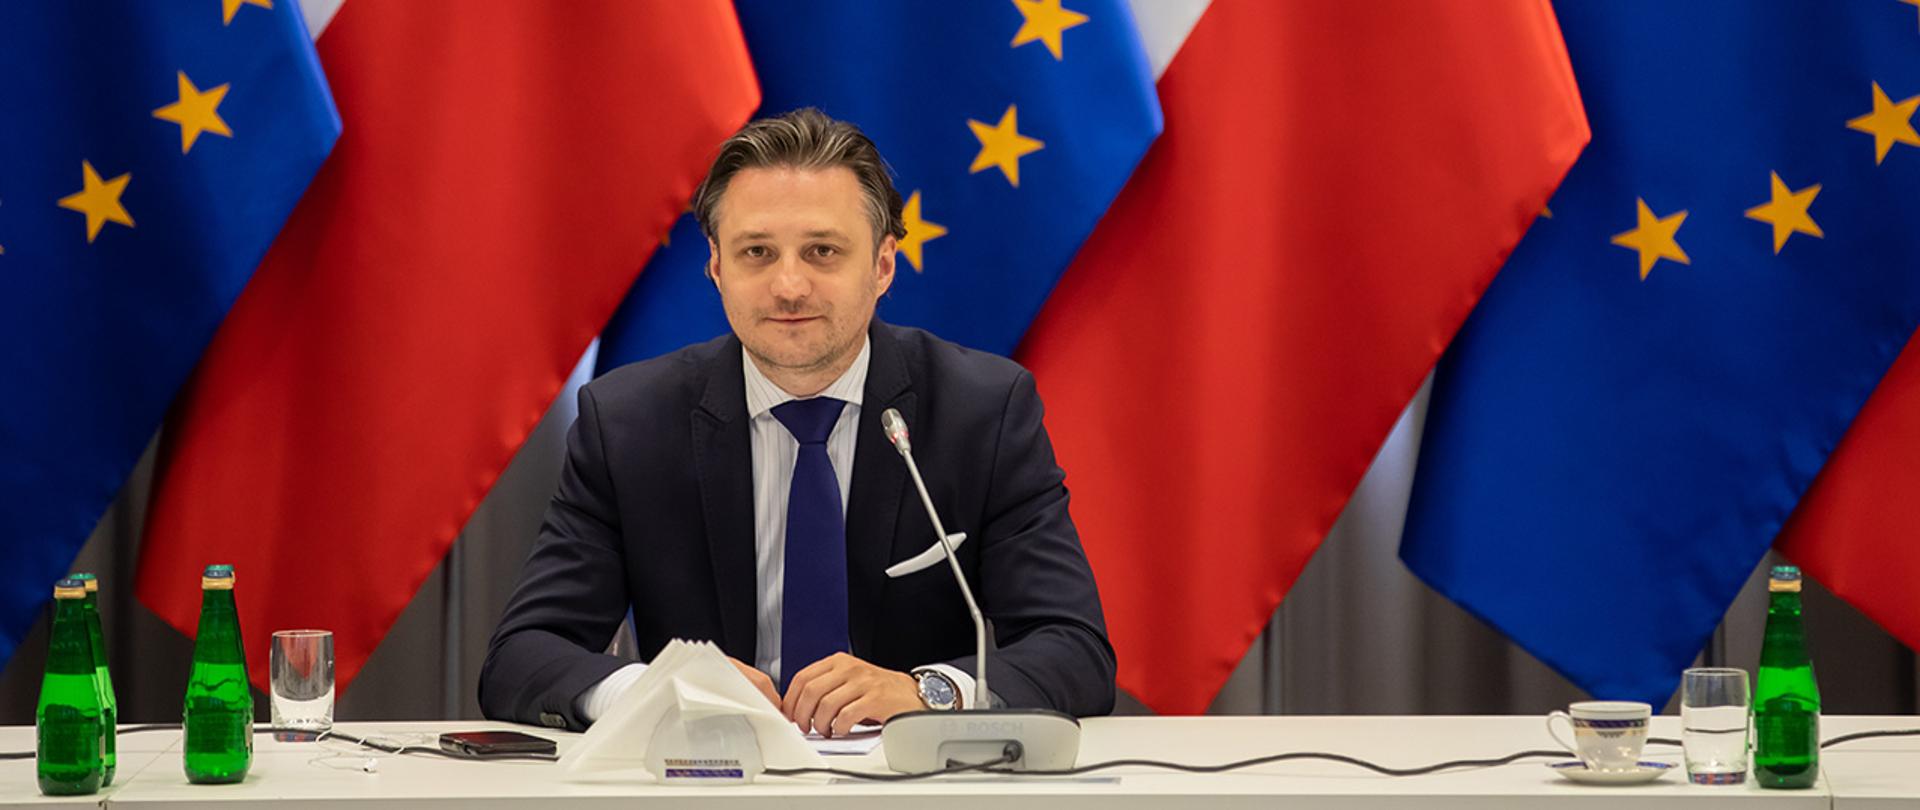 Na zdjęciu widać siedzącego przy stole, uśmiechniętego Bartosza Grodeckiego wiceministra SWiA. W tle widać flagi Polski i UE.